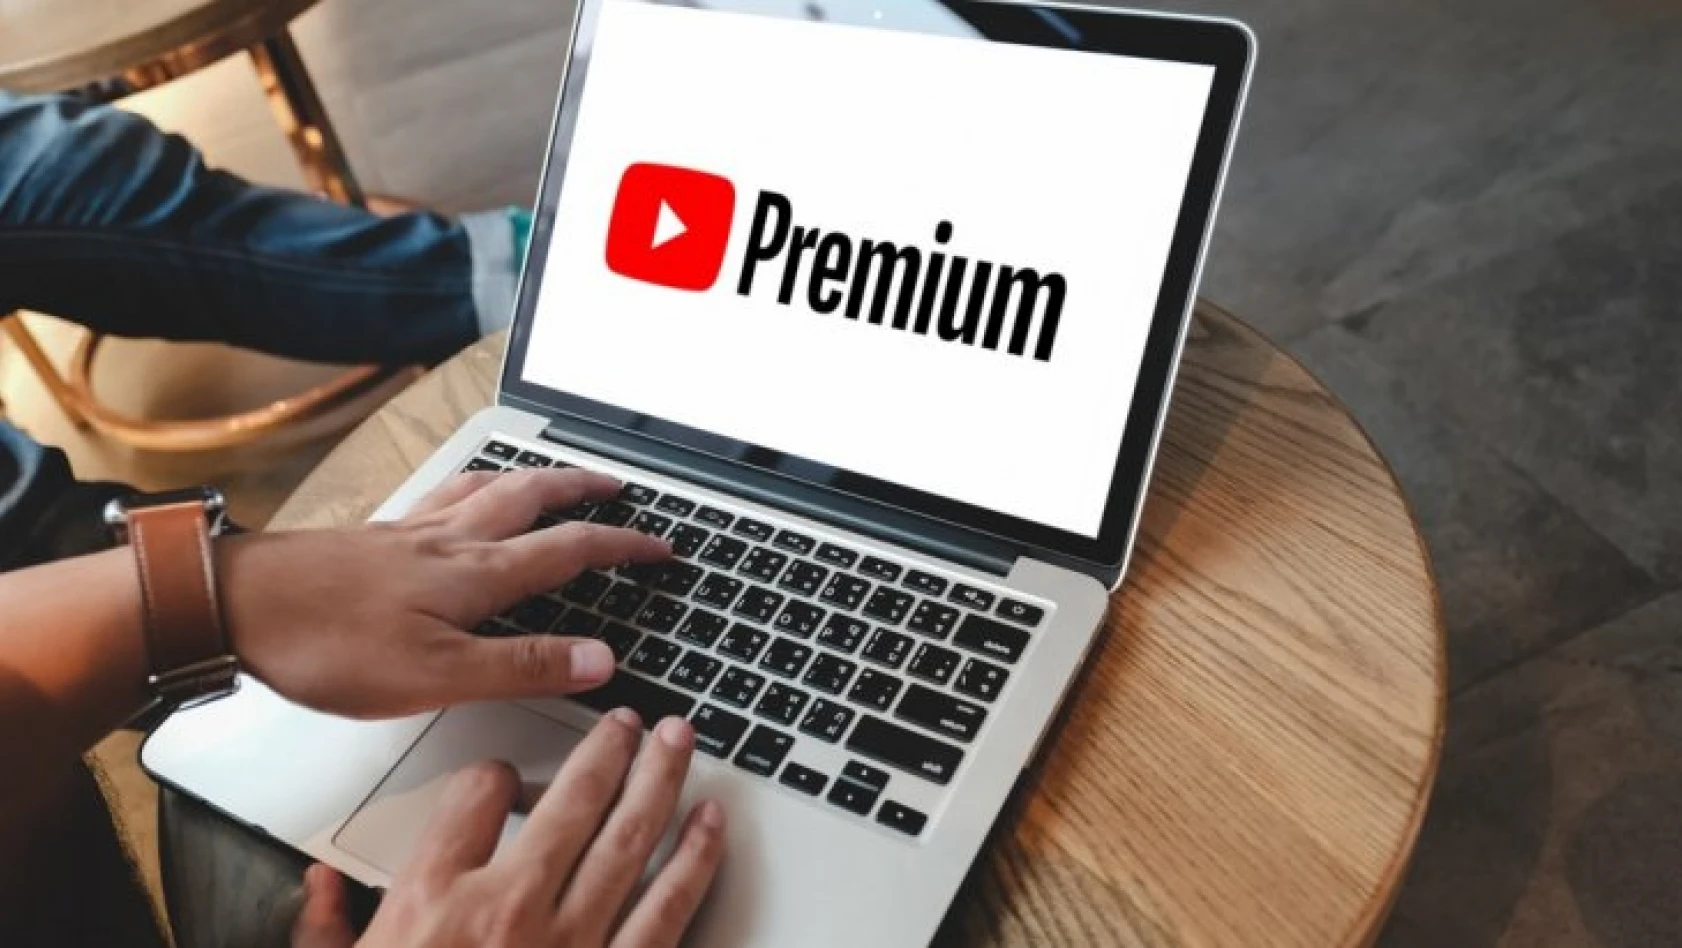 YouTube duyurdu! Bu kullanıcılar ücretsiz Premium hizmeti alacak!